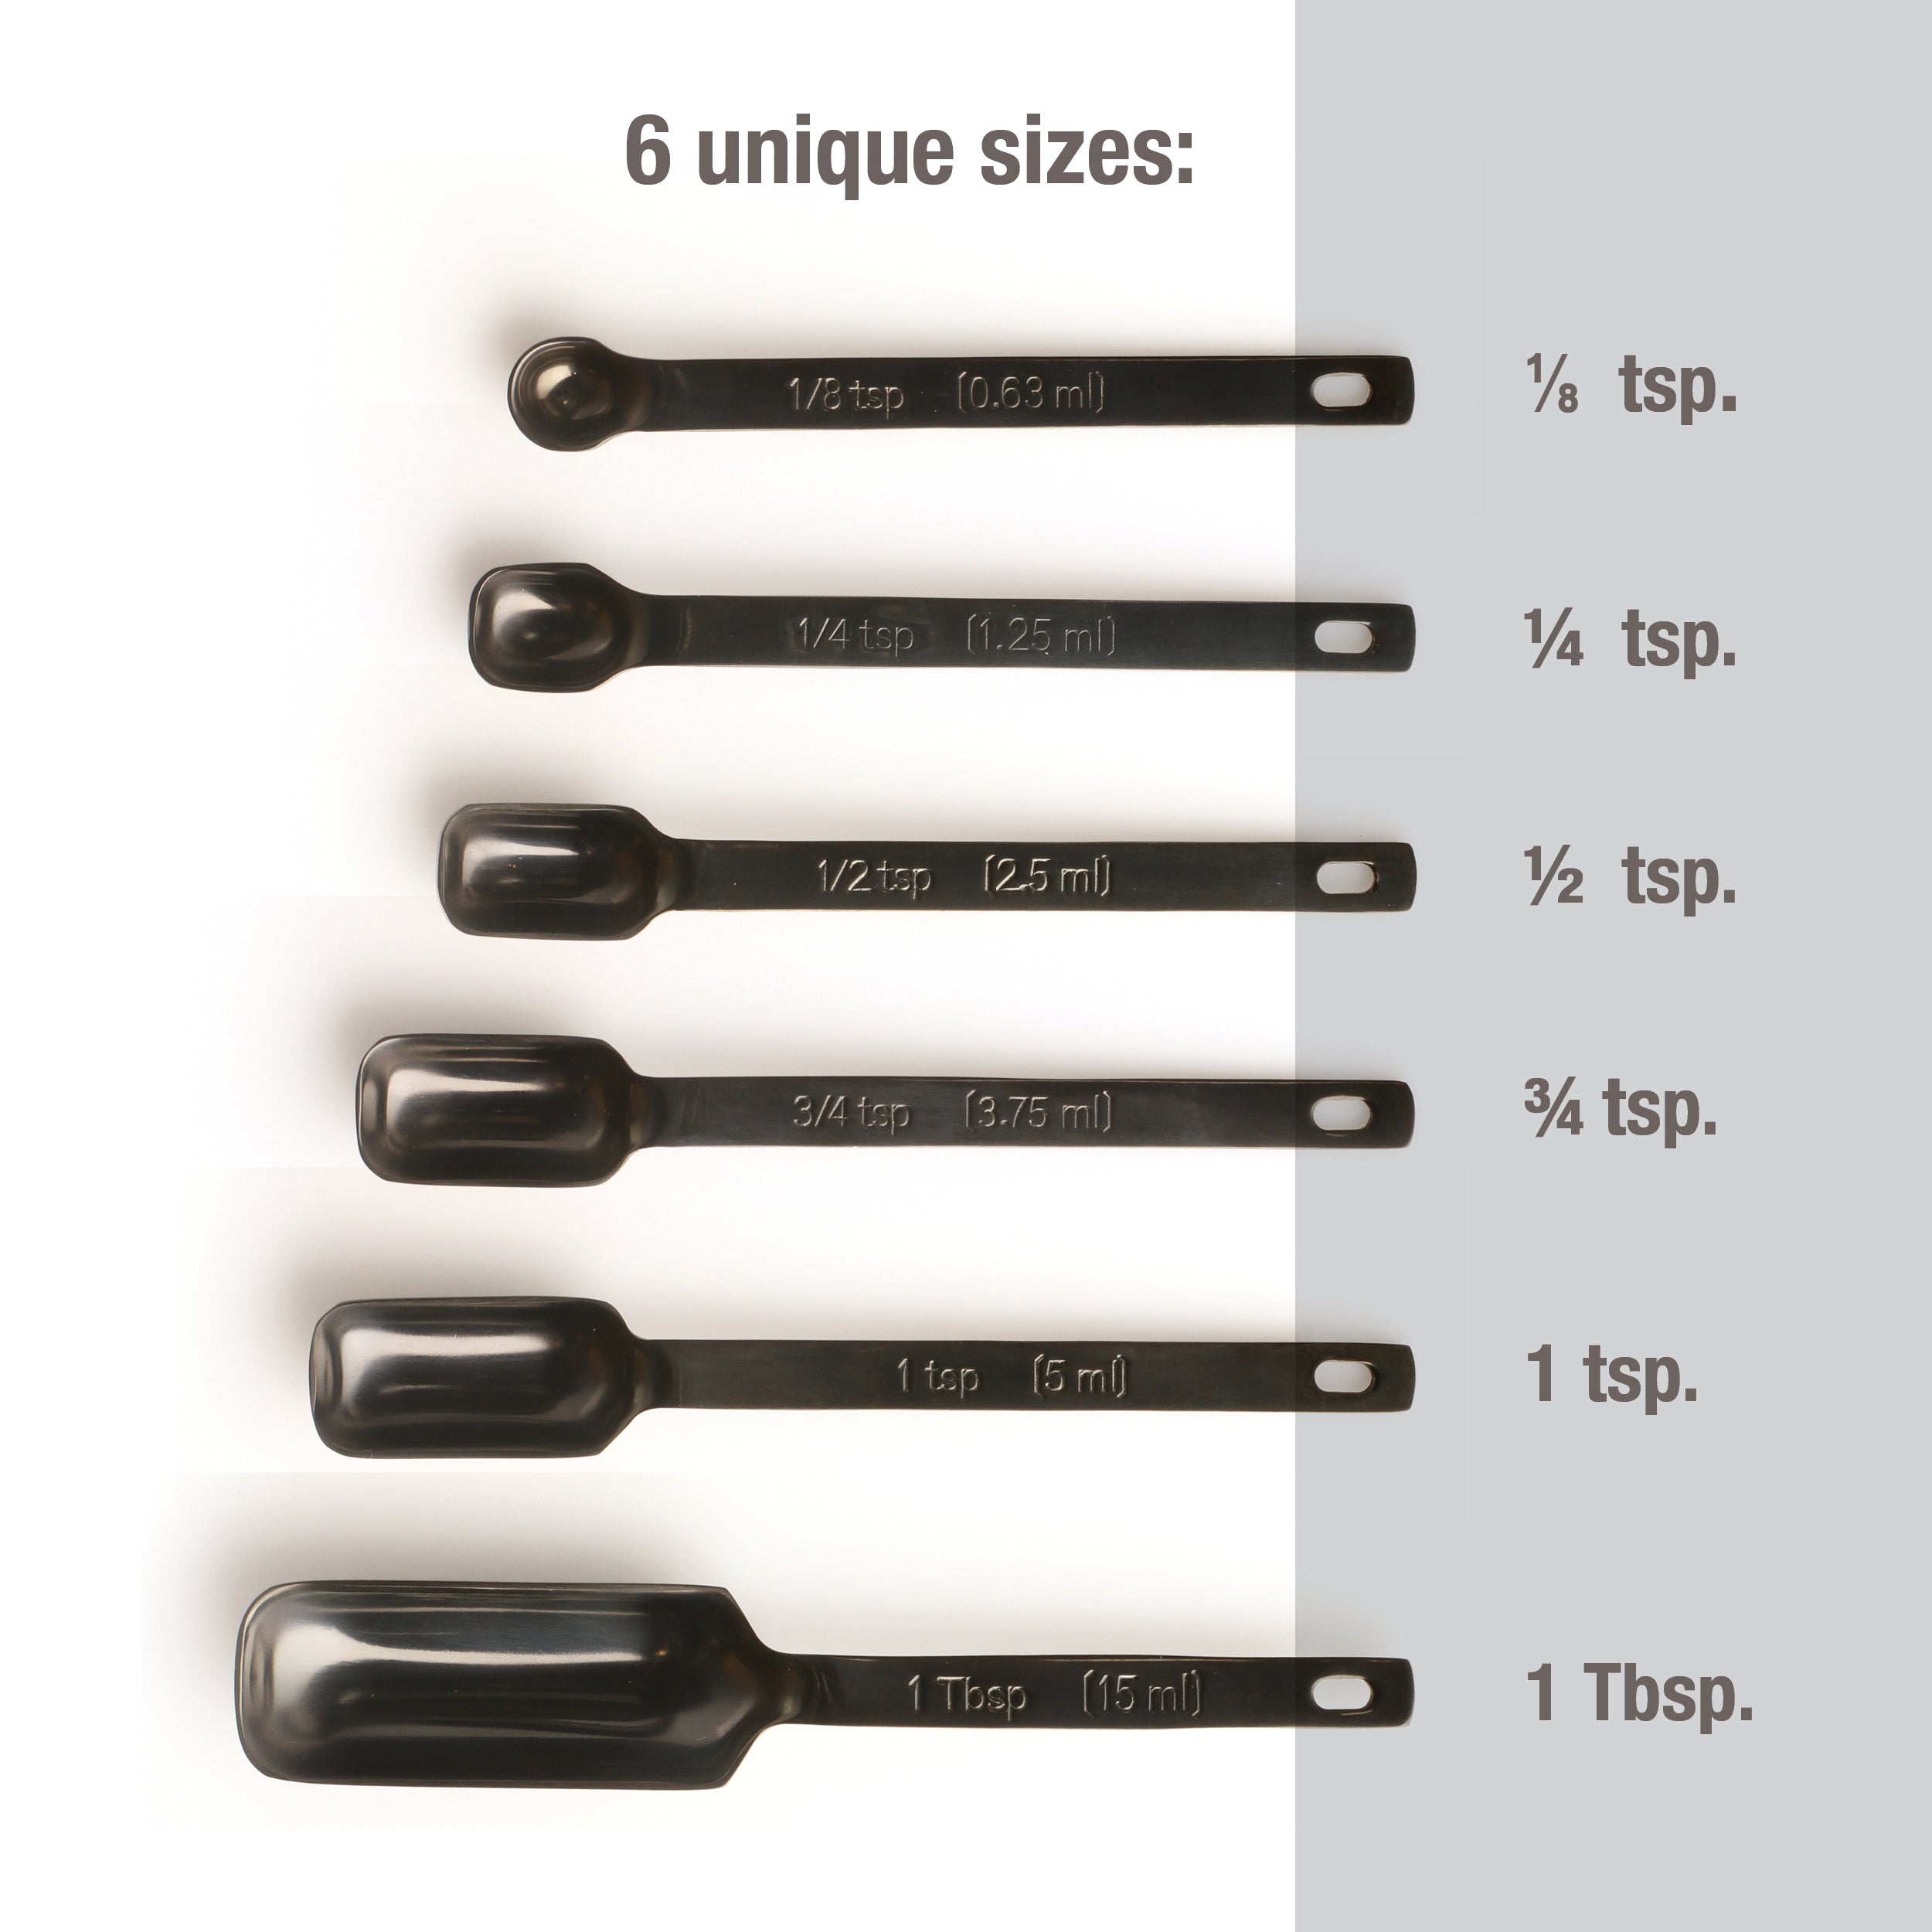 Single 1/4 Teaspoon (tsp) Measuring Spoon, Heavy-Duty Stainless Steel,  Narrow, Long Handle Design Fits in Spice Jar, Set of One 1/4 Tea Spoon